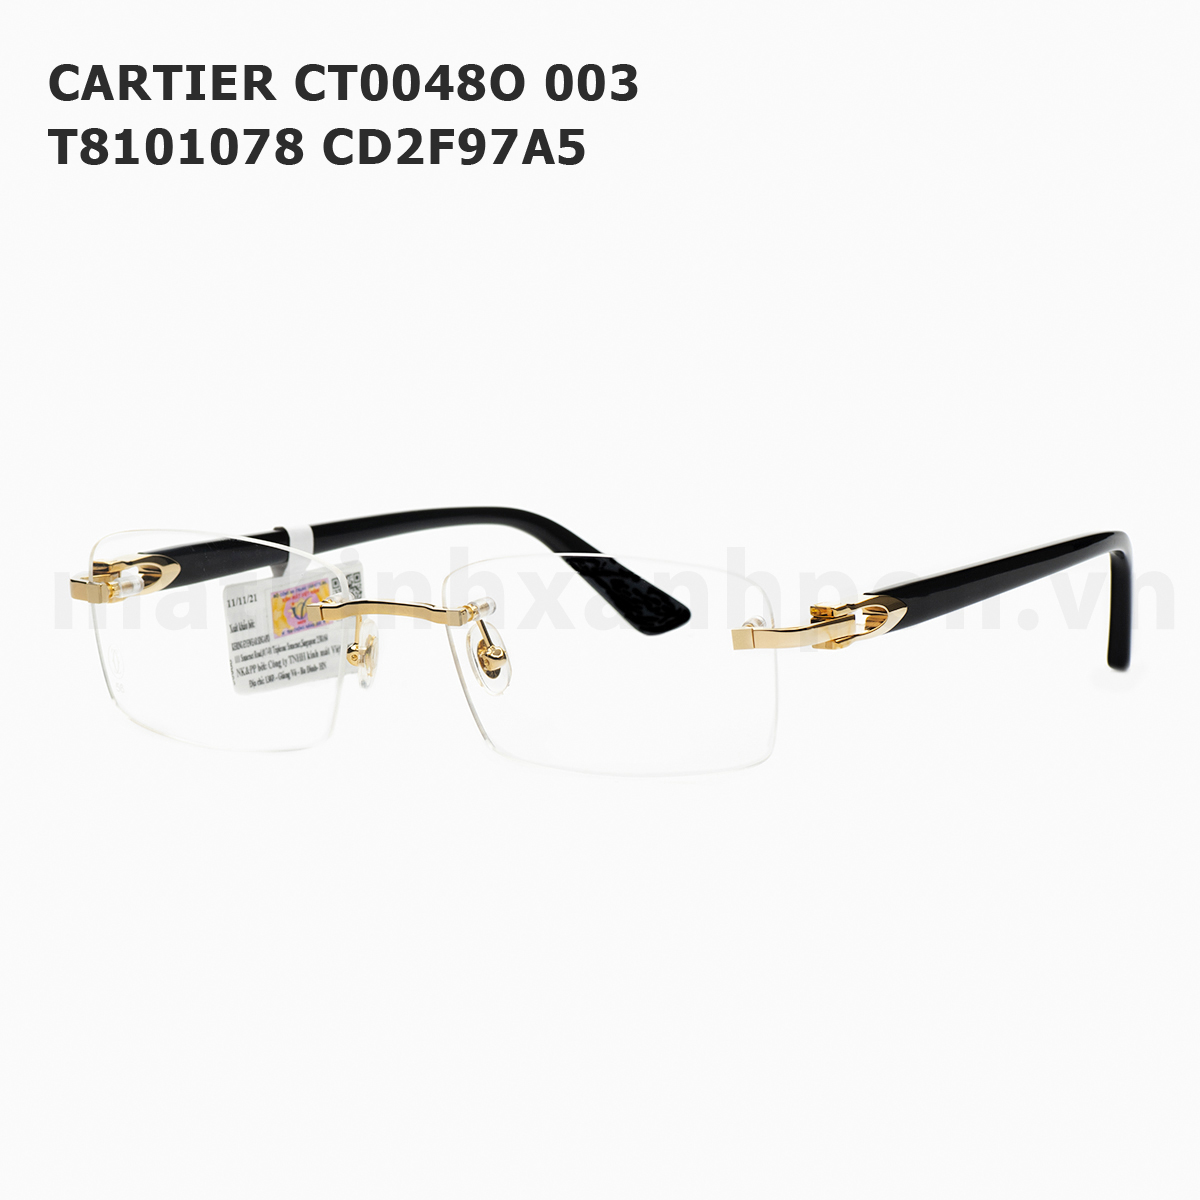 Cartier CT0048O 003 T8101078 CD2F97A5